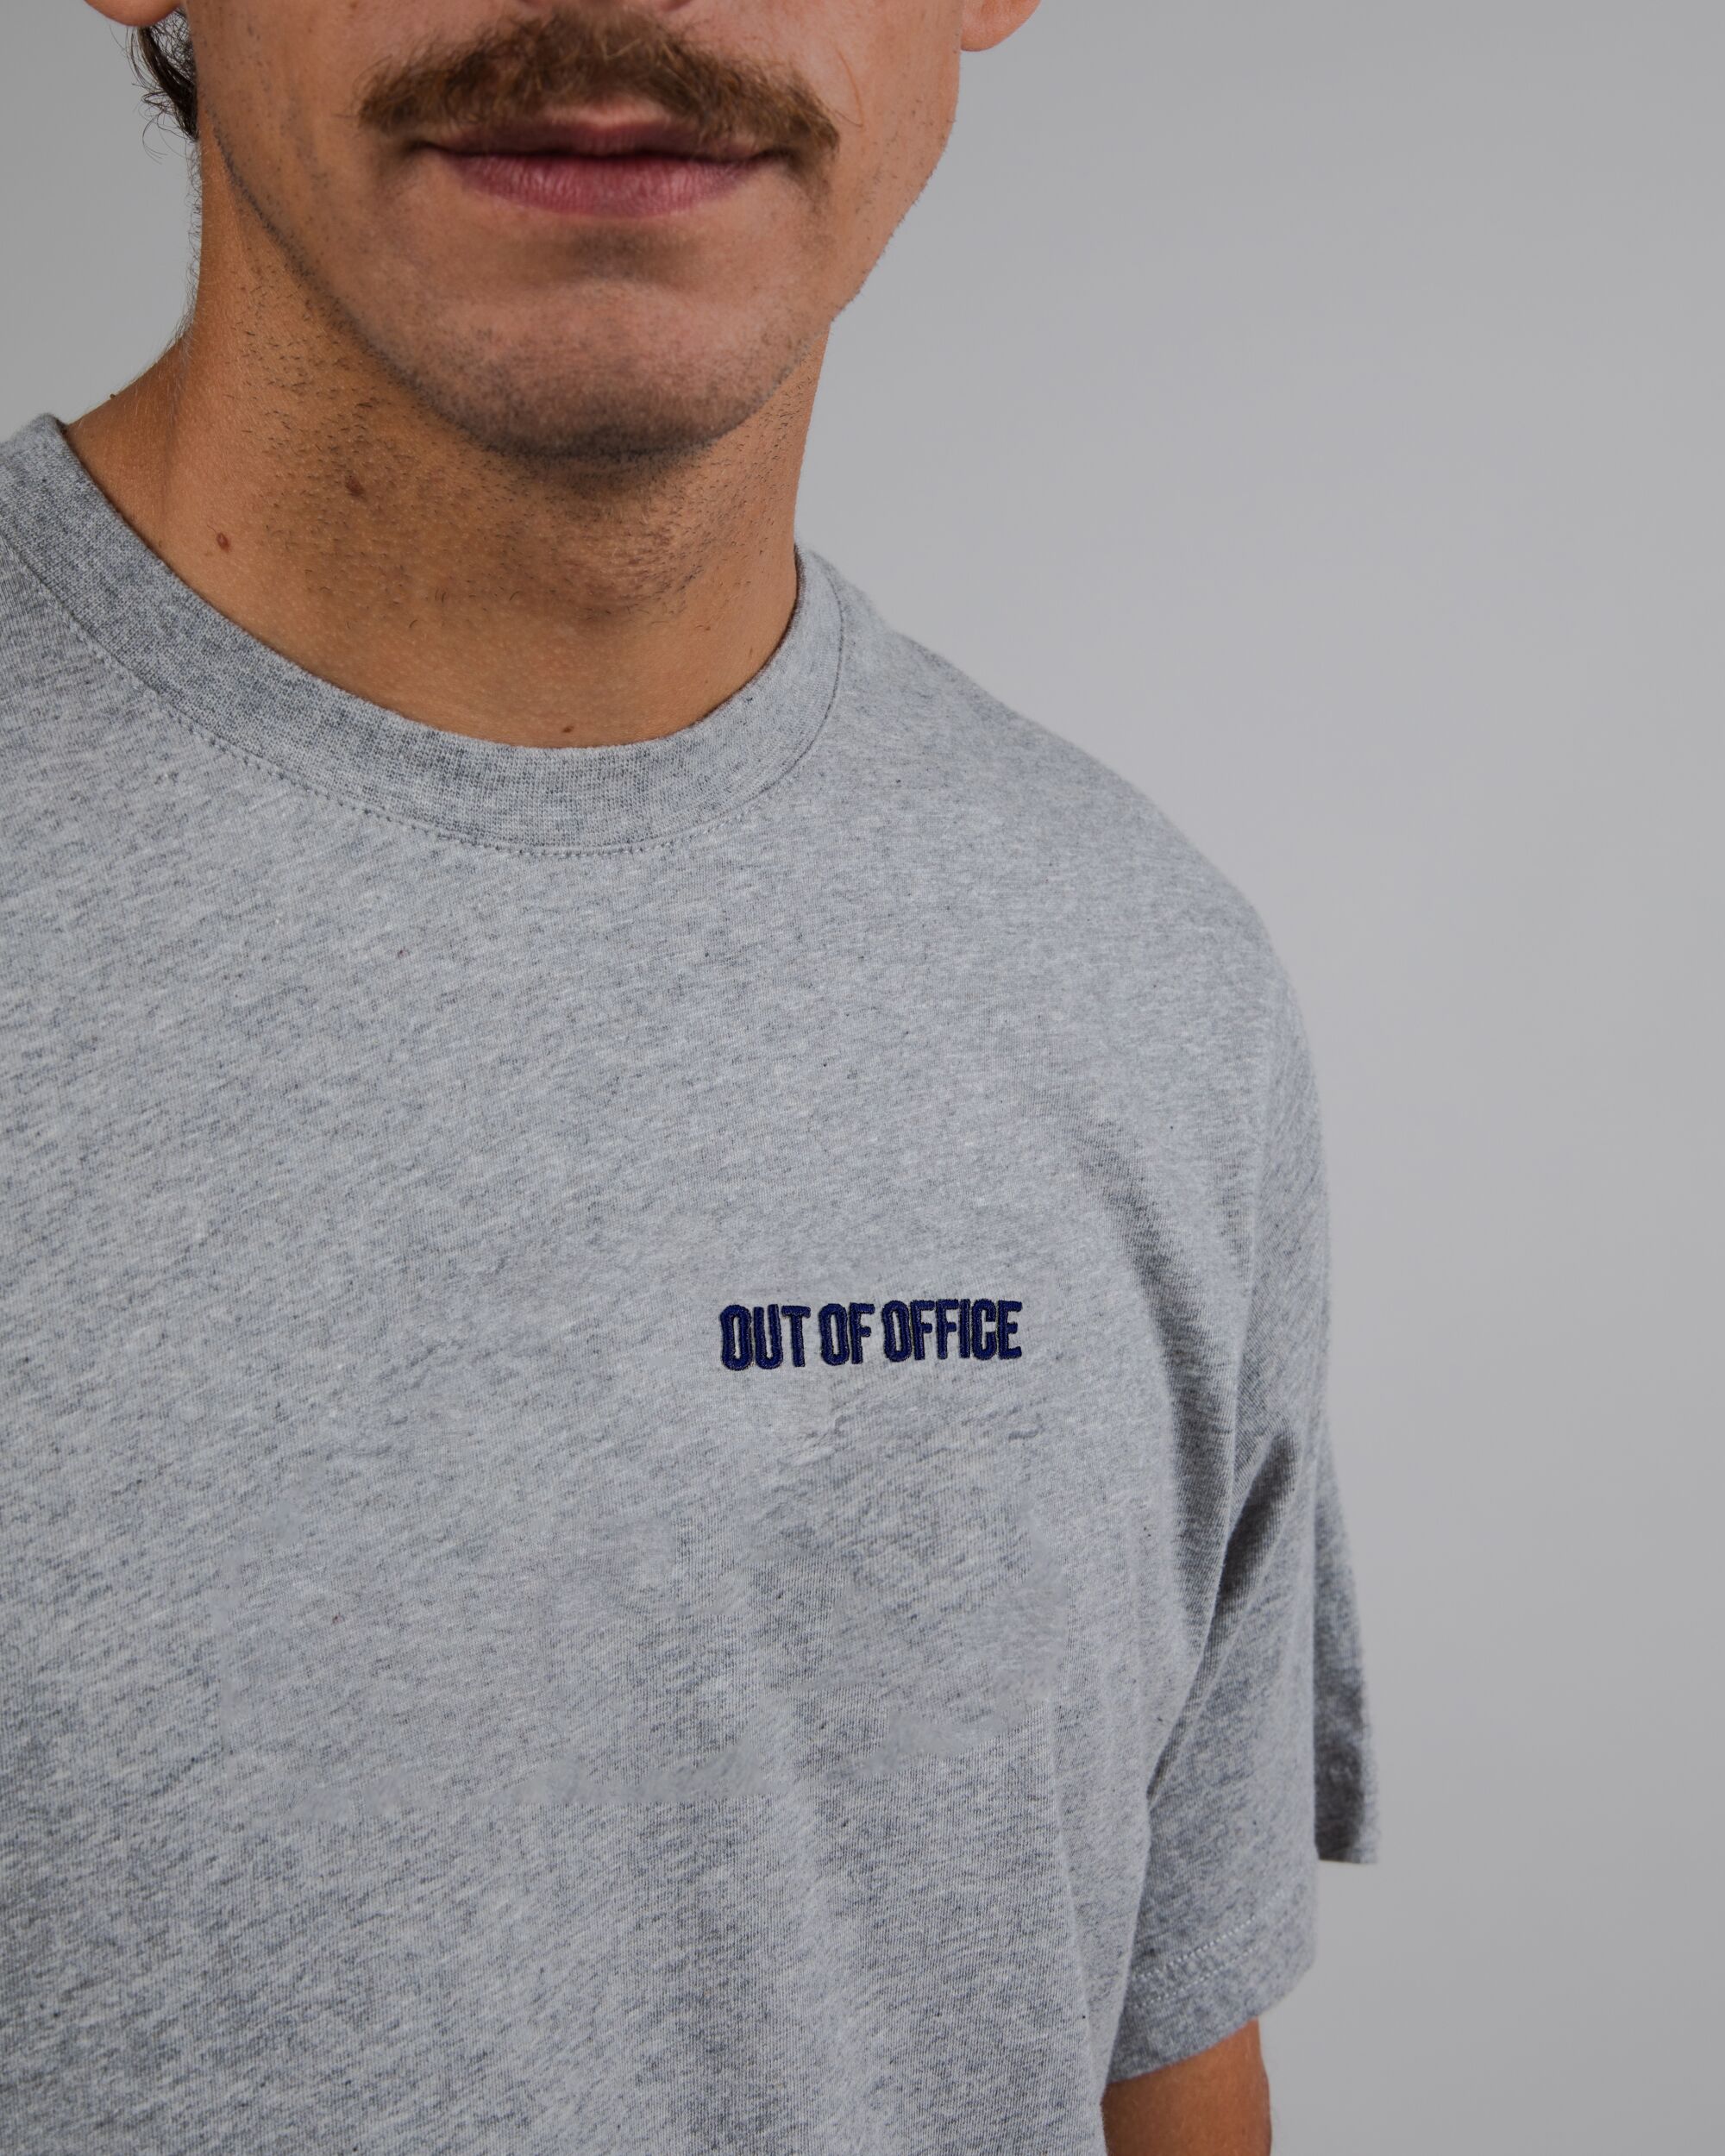 Out of Office T-shirt in grau aus Bio Baumwolle von Brava Fabrics